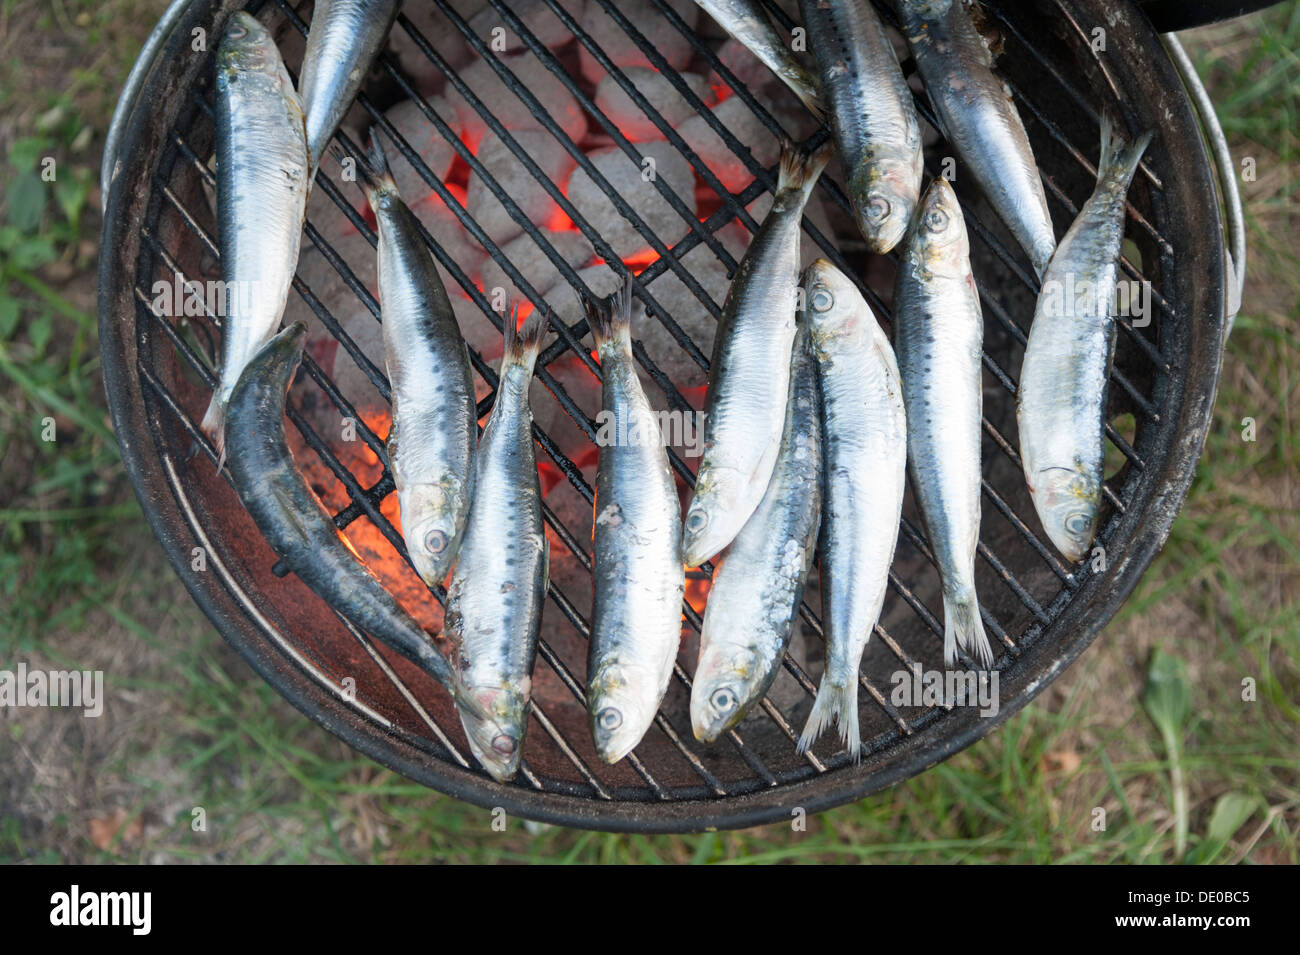 La cuisson sur un barbecue de sardines Banque D'Images